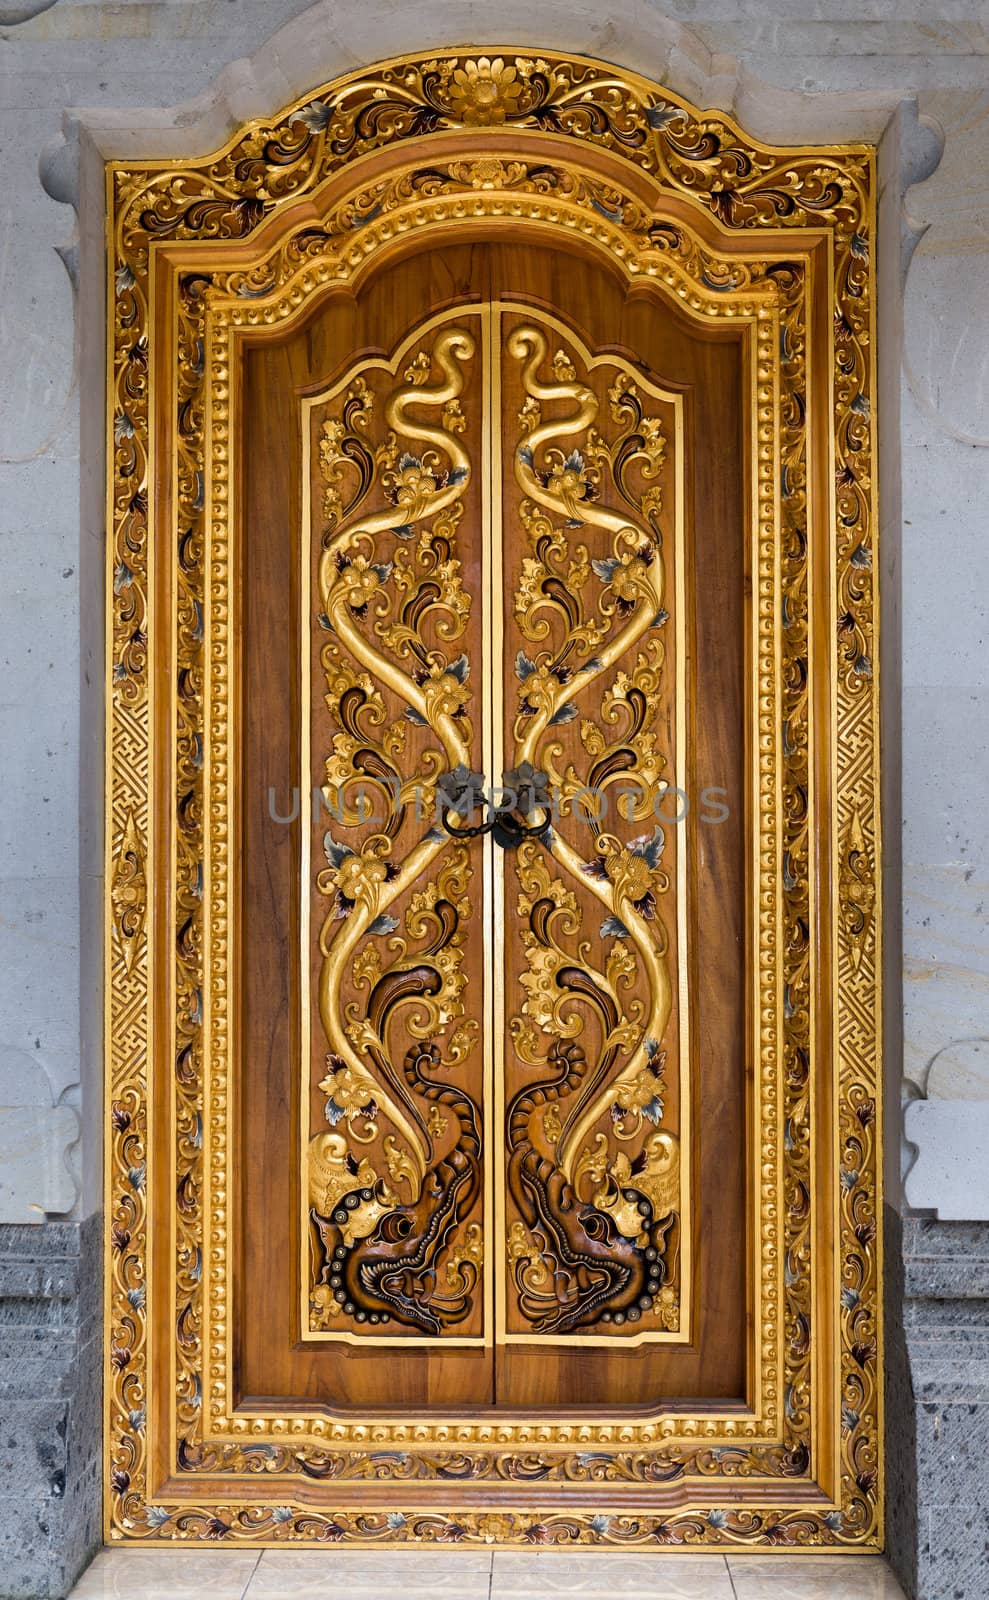 Balinese carving door in Batuan temple, Bali  by iryna_rasko